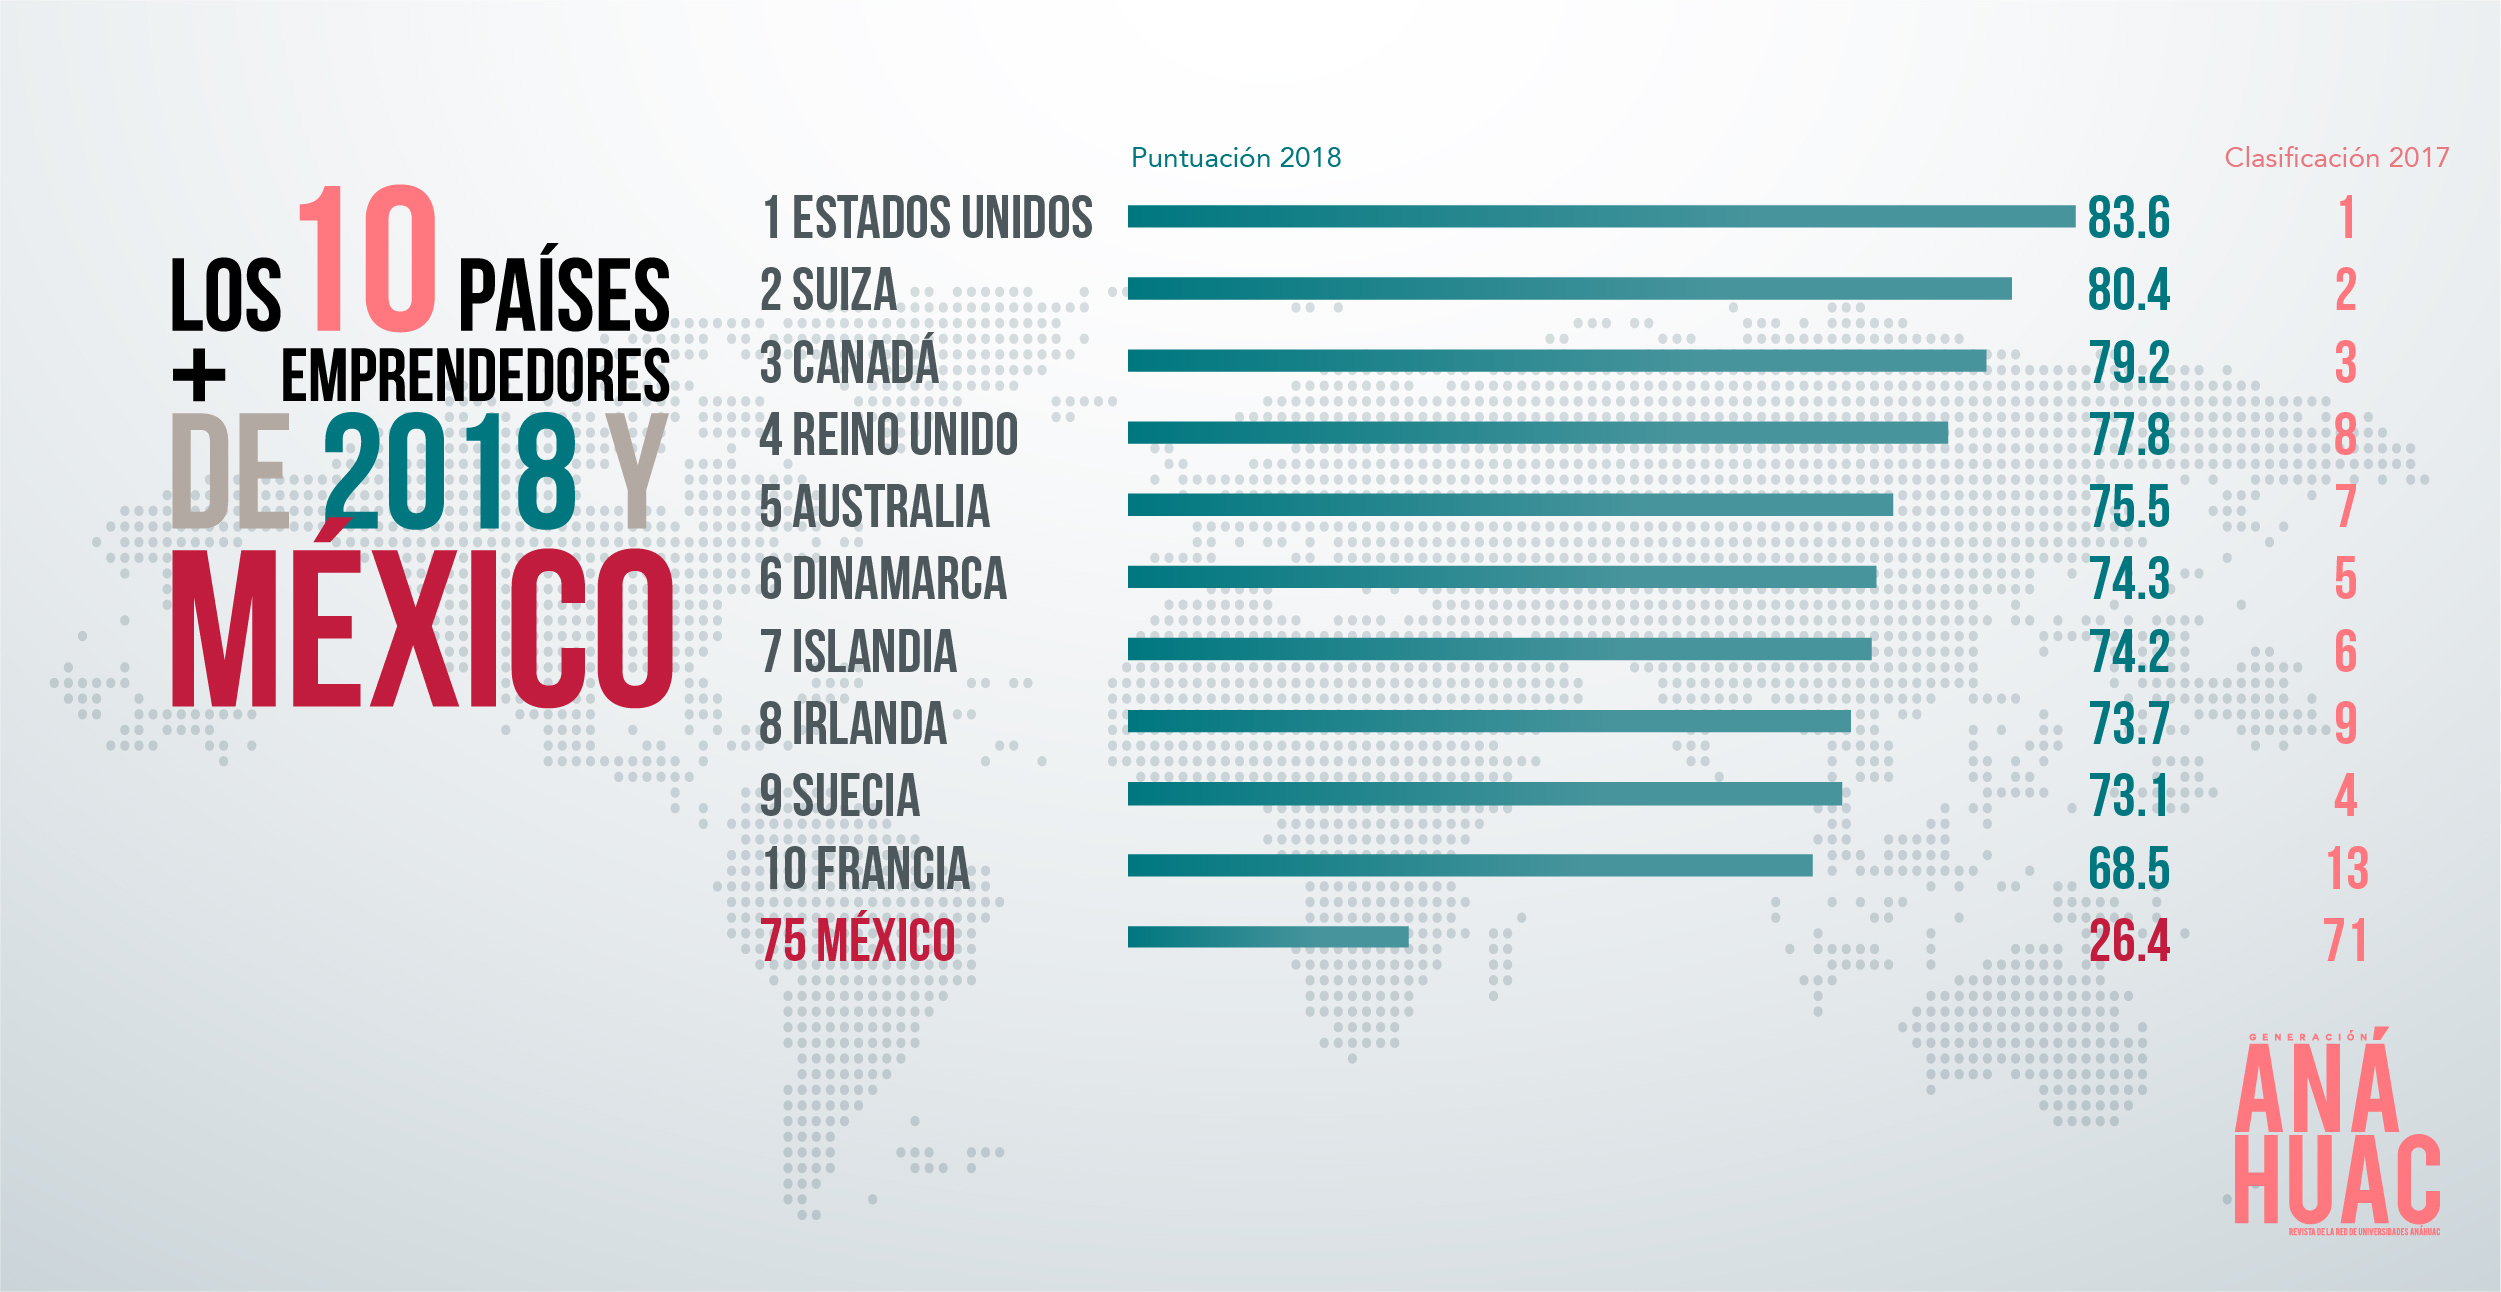 México se encuentra en lugar 75 a nivel mundial en cuestiones de innovación